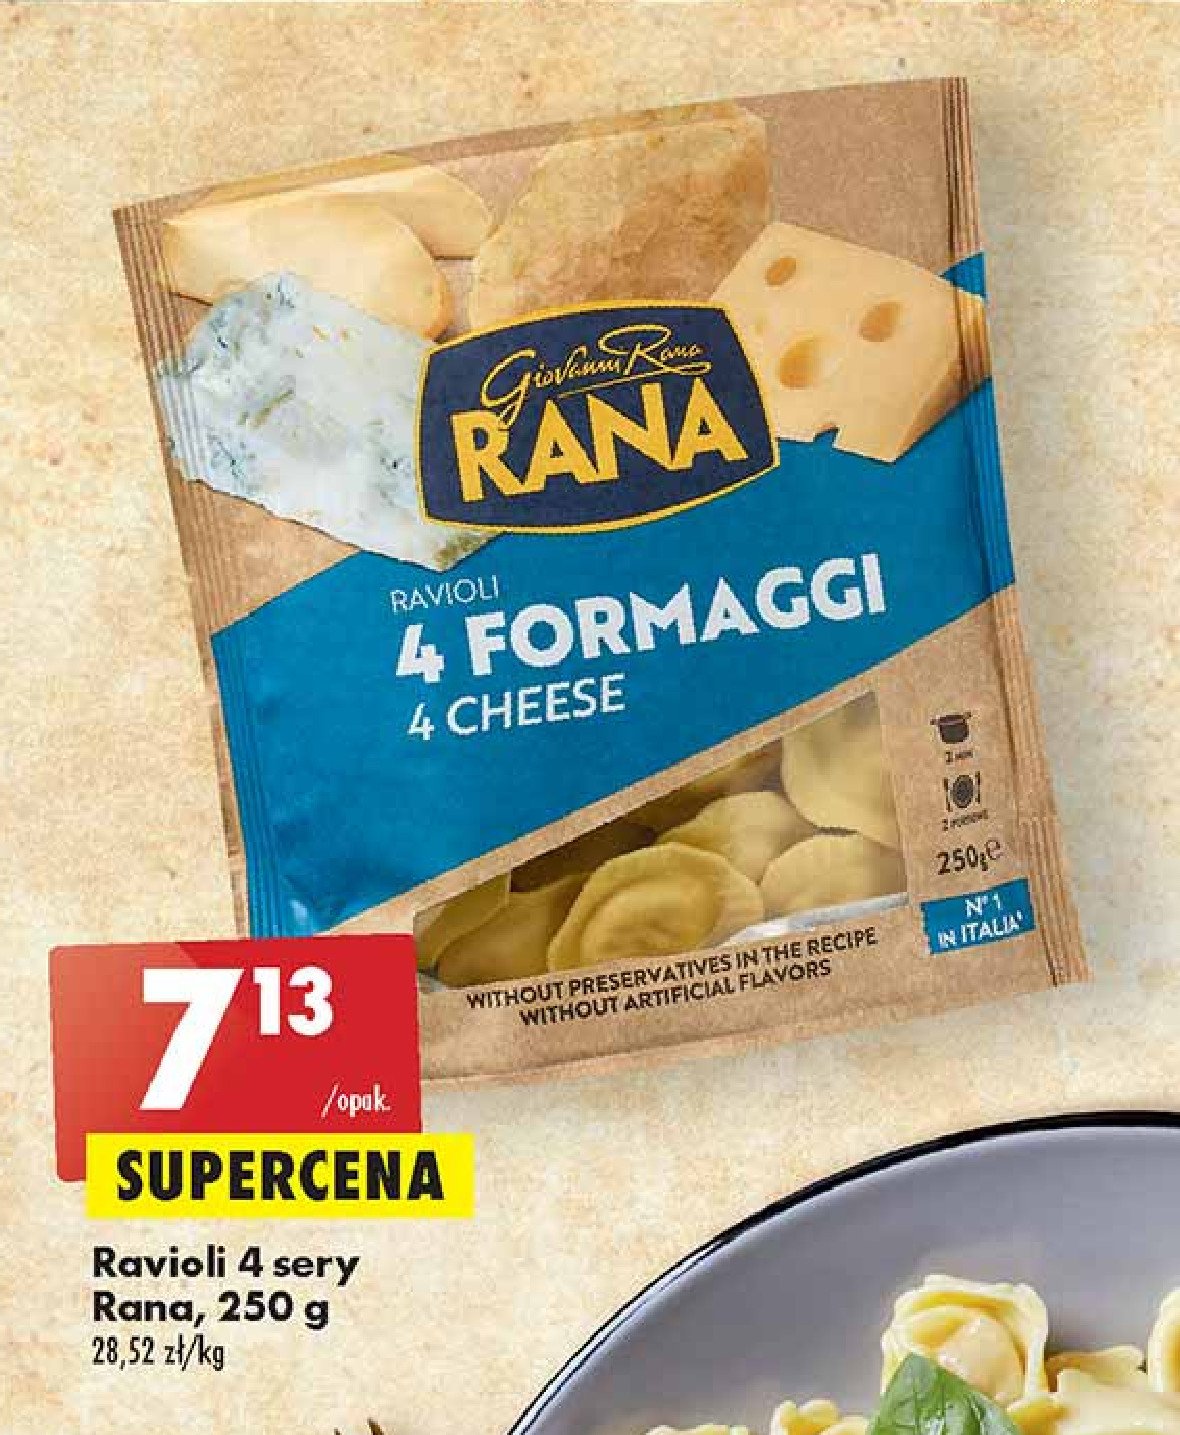 Ravioli 4 fromaggi Giovanni rana promocje